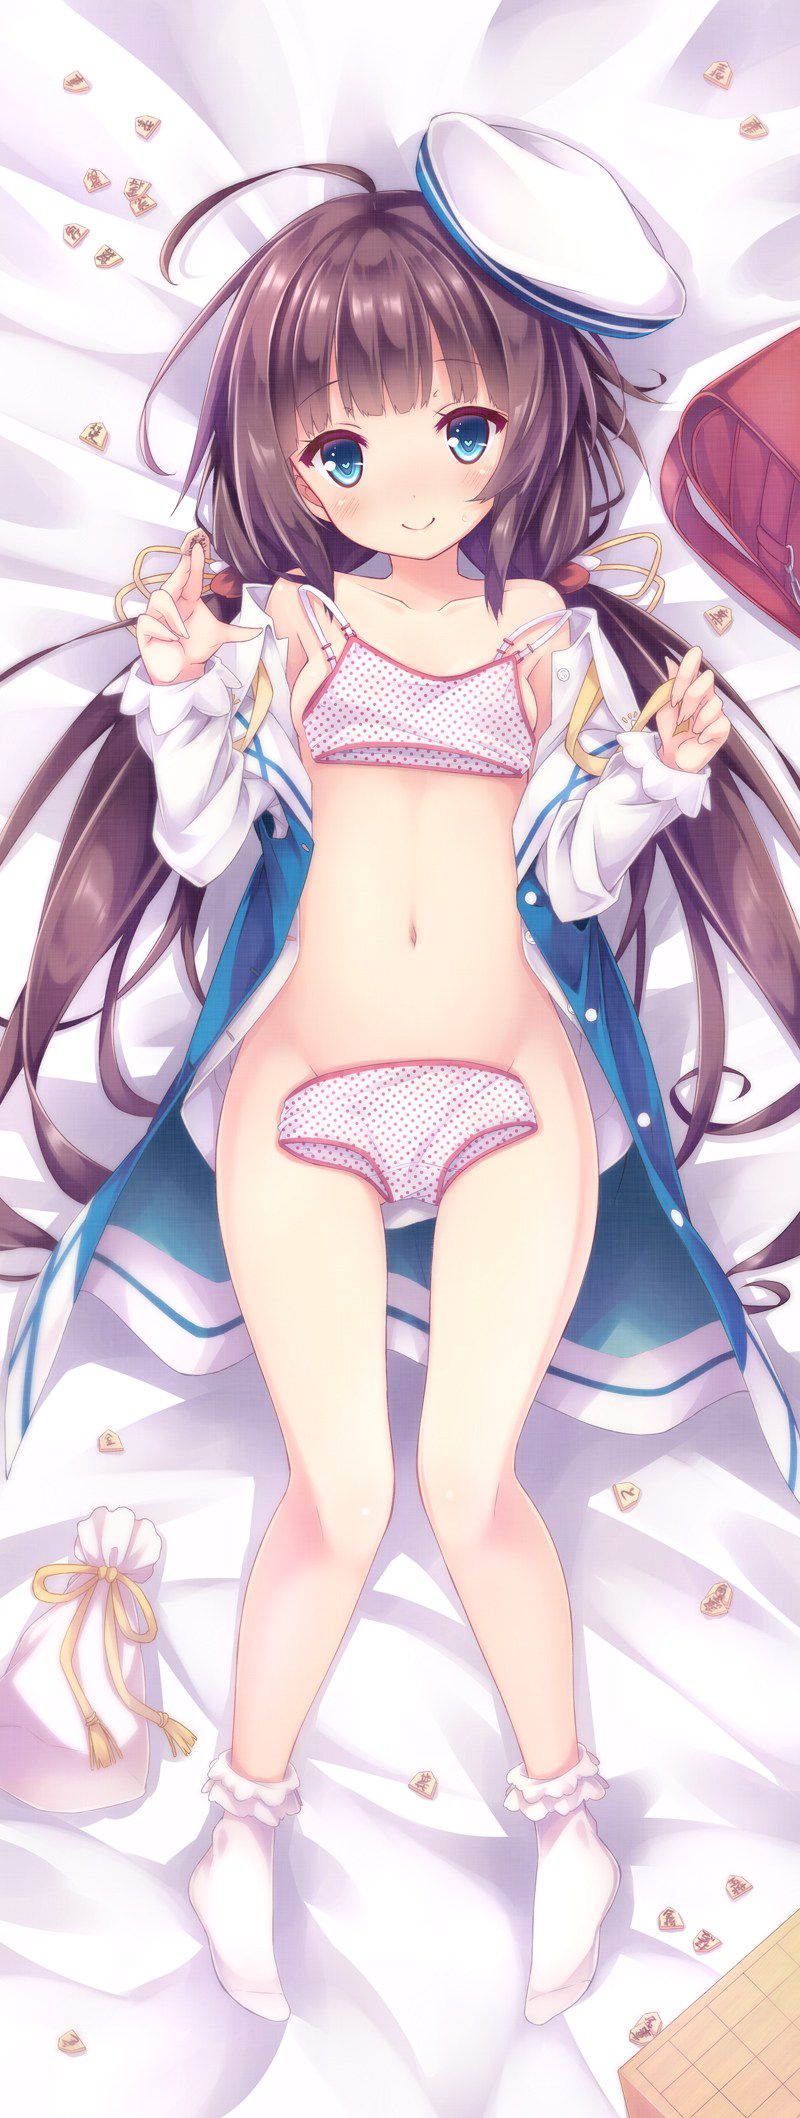 [Dakimakura] image of erotic Dakimakura cover anime game system part 74 38